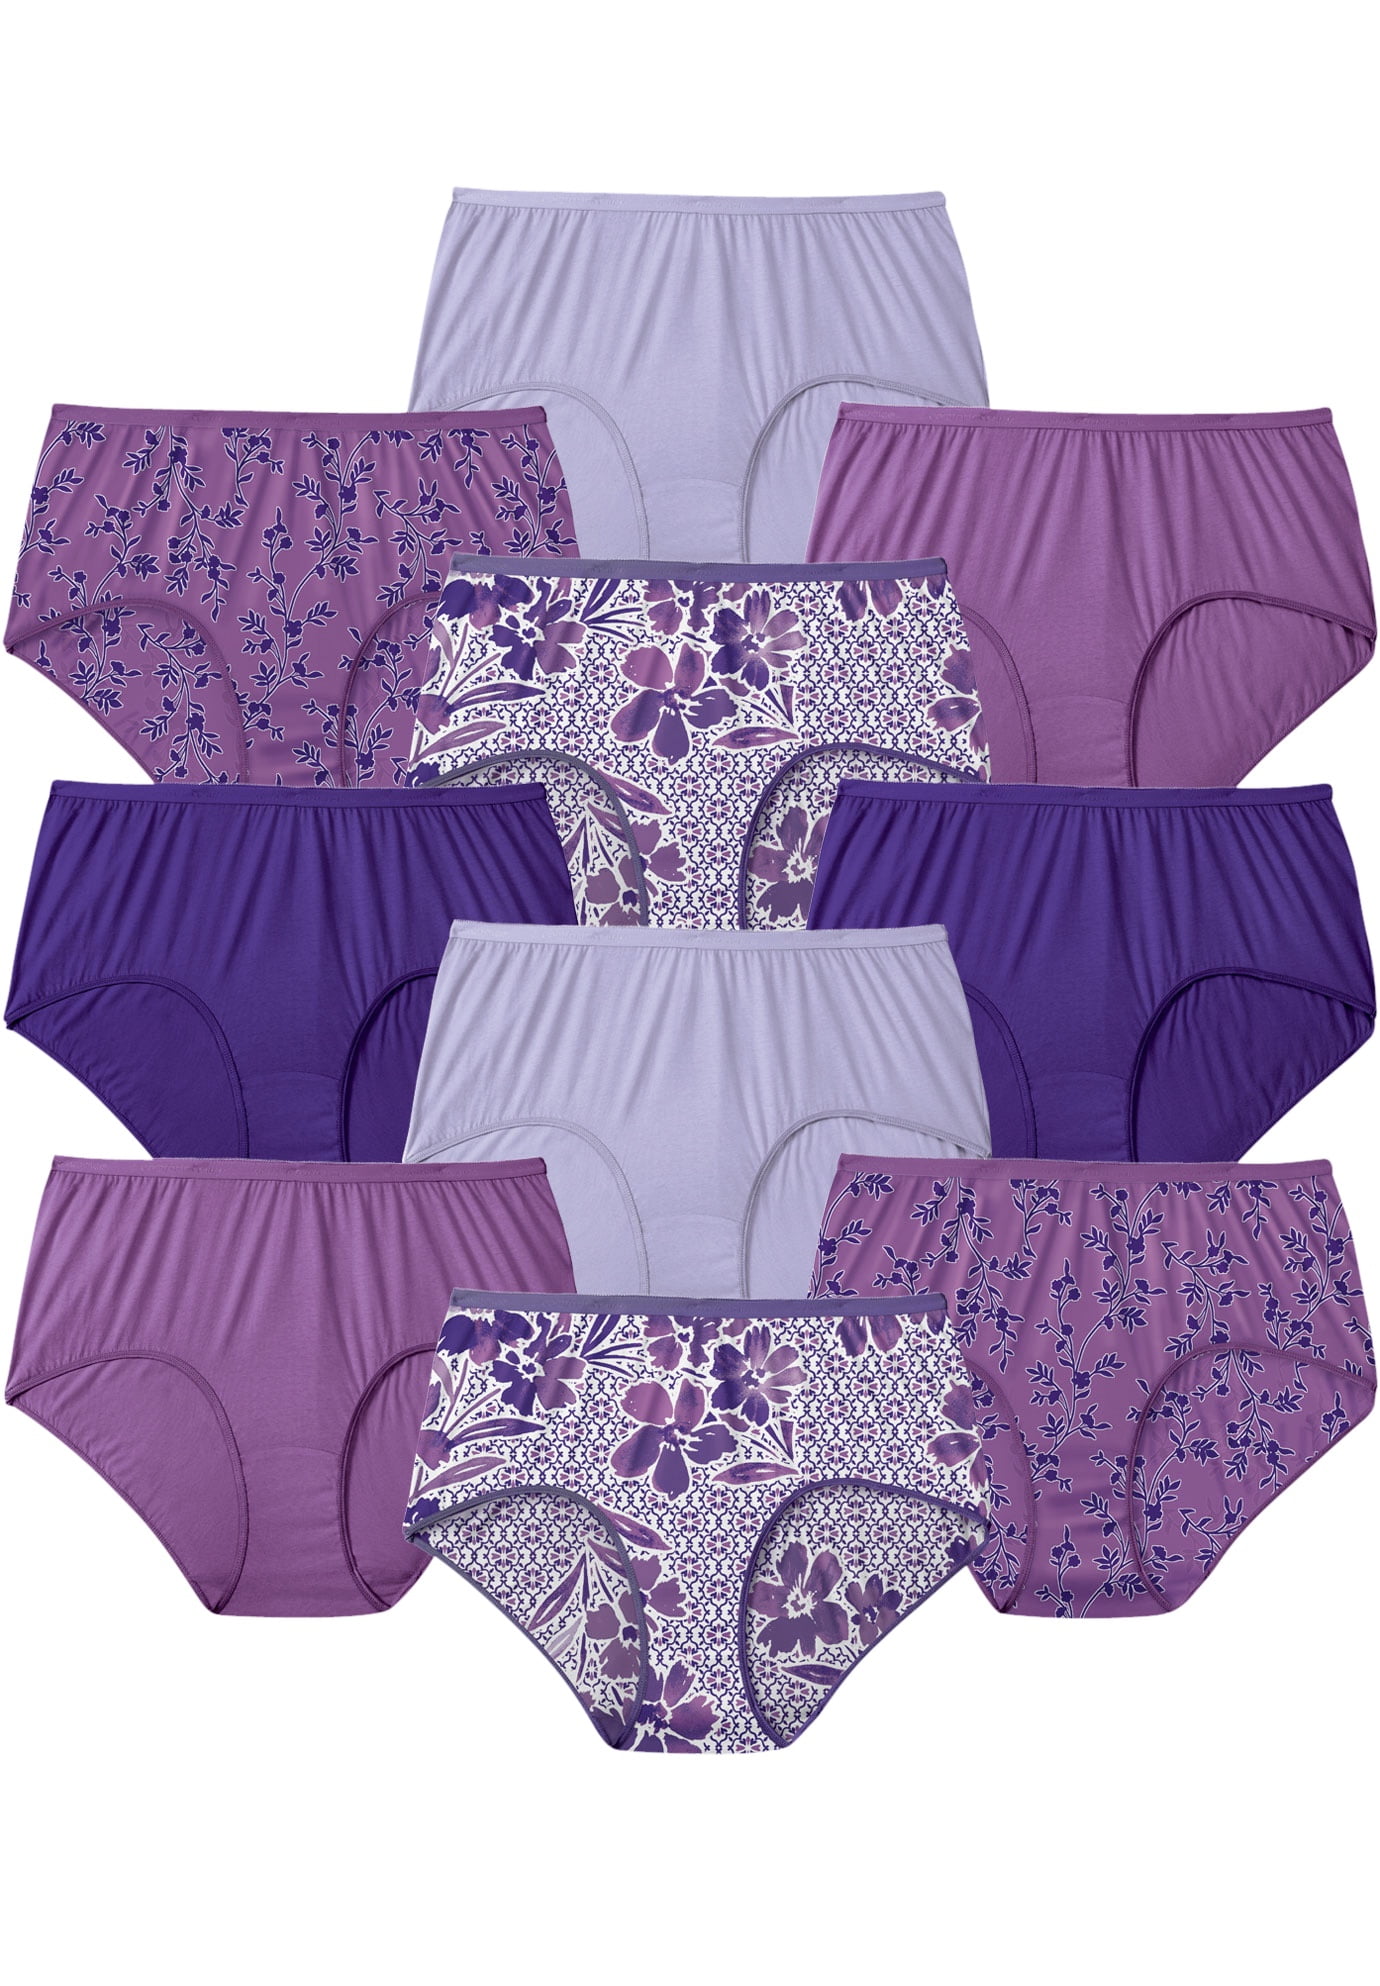 Comfort Choice Women's Plus Size Cotton Brief 10-Pack Underwear ...